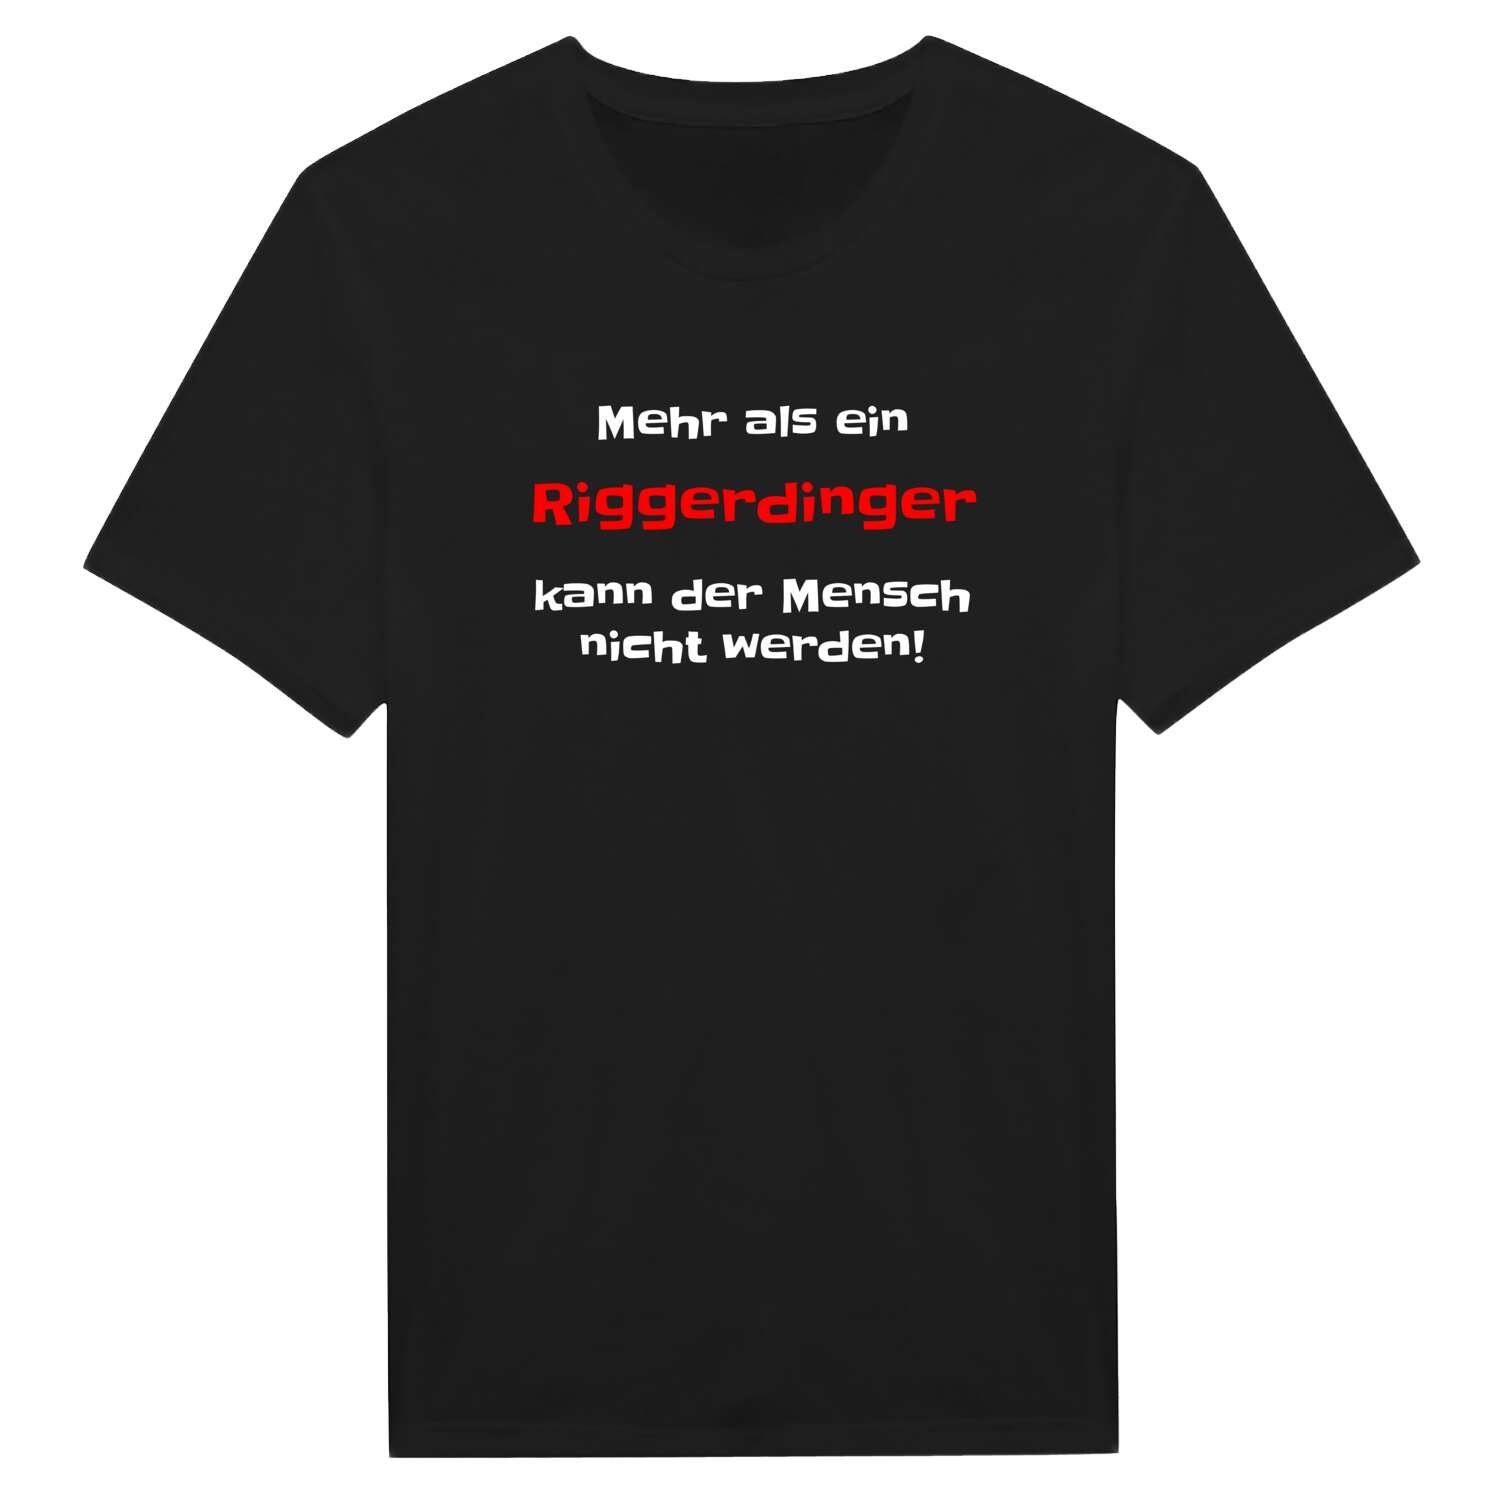 Riggerding T-Shirt »Mehr als ein«